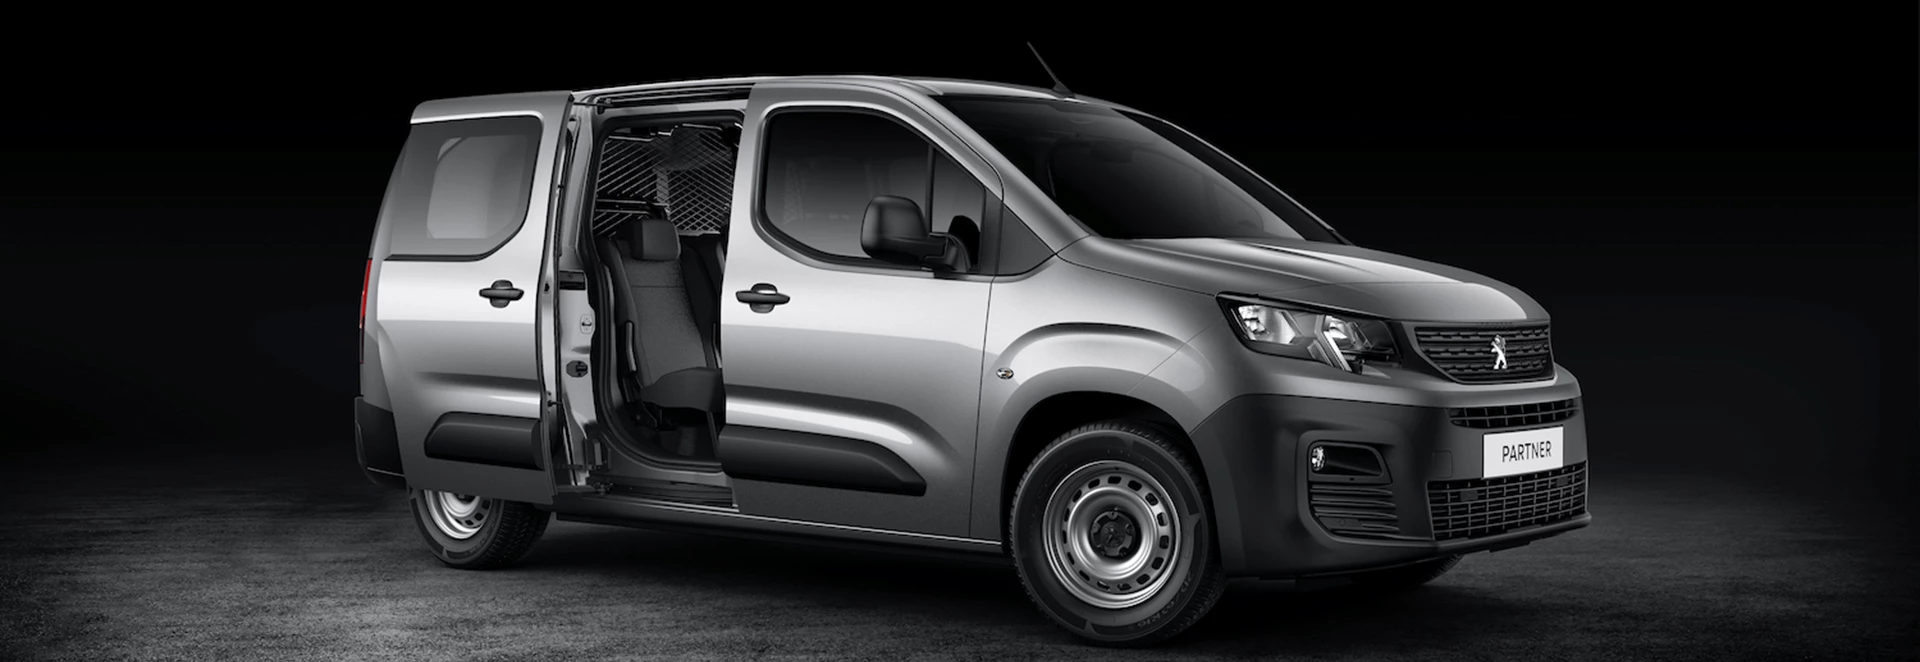 Peugeot extends Partner line-up with new Crew Van model